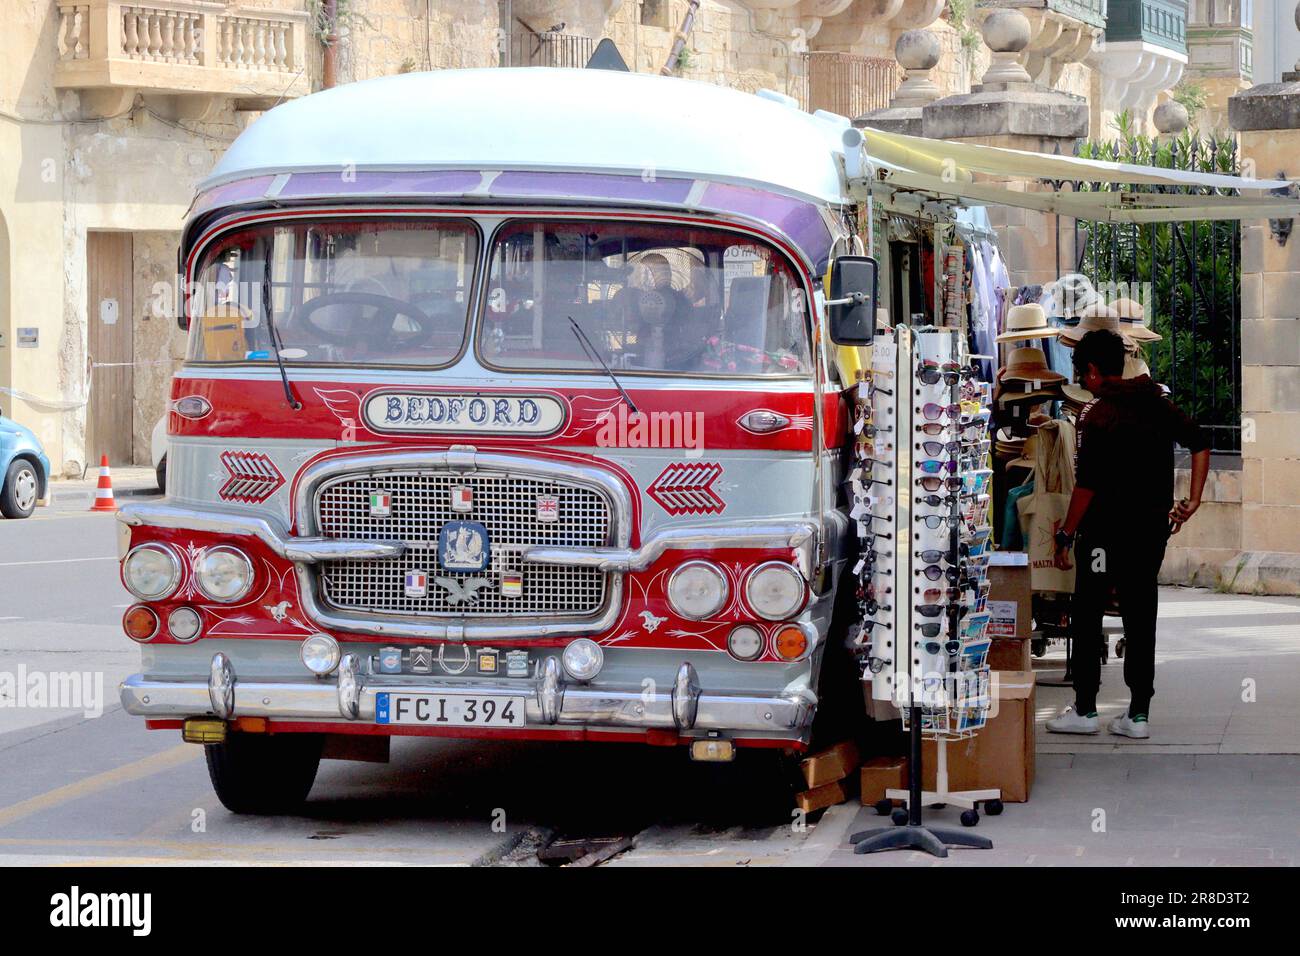 Ein alter Gozo-Bus mit maltesischer Karosserie, gebaut auf einem Bedford-Motor und Fahrgestell, umgebaut in einen mobilen Souvenirladen für Touristen, parkt in Valletta. Stockfoto